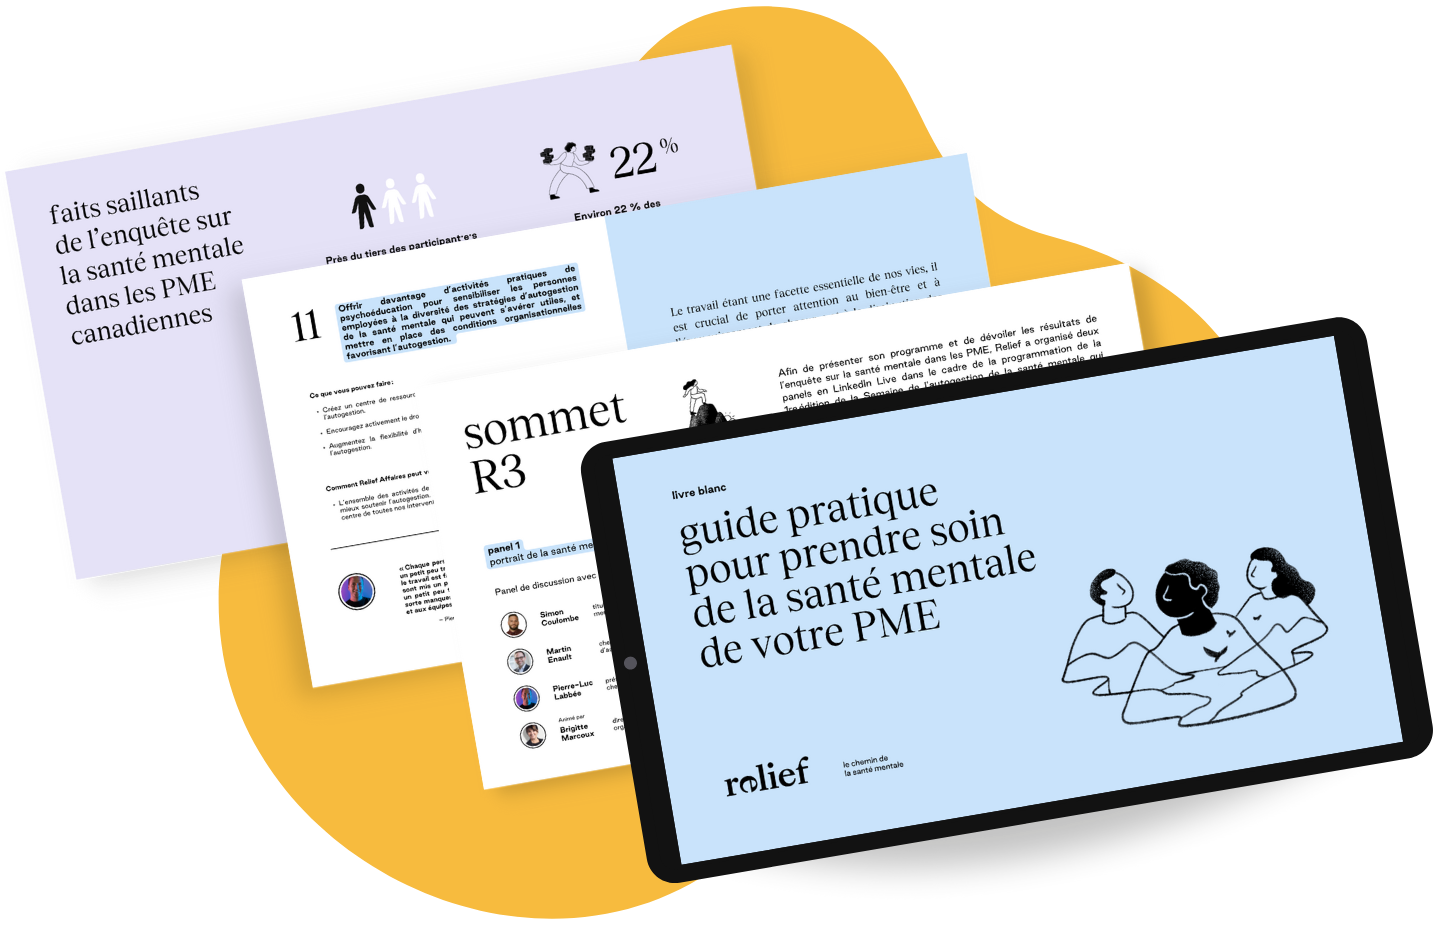 Le livre blanc de Relief - Un guide pratique pour la santé mentale de votre PME